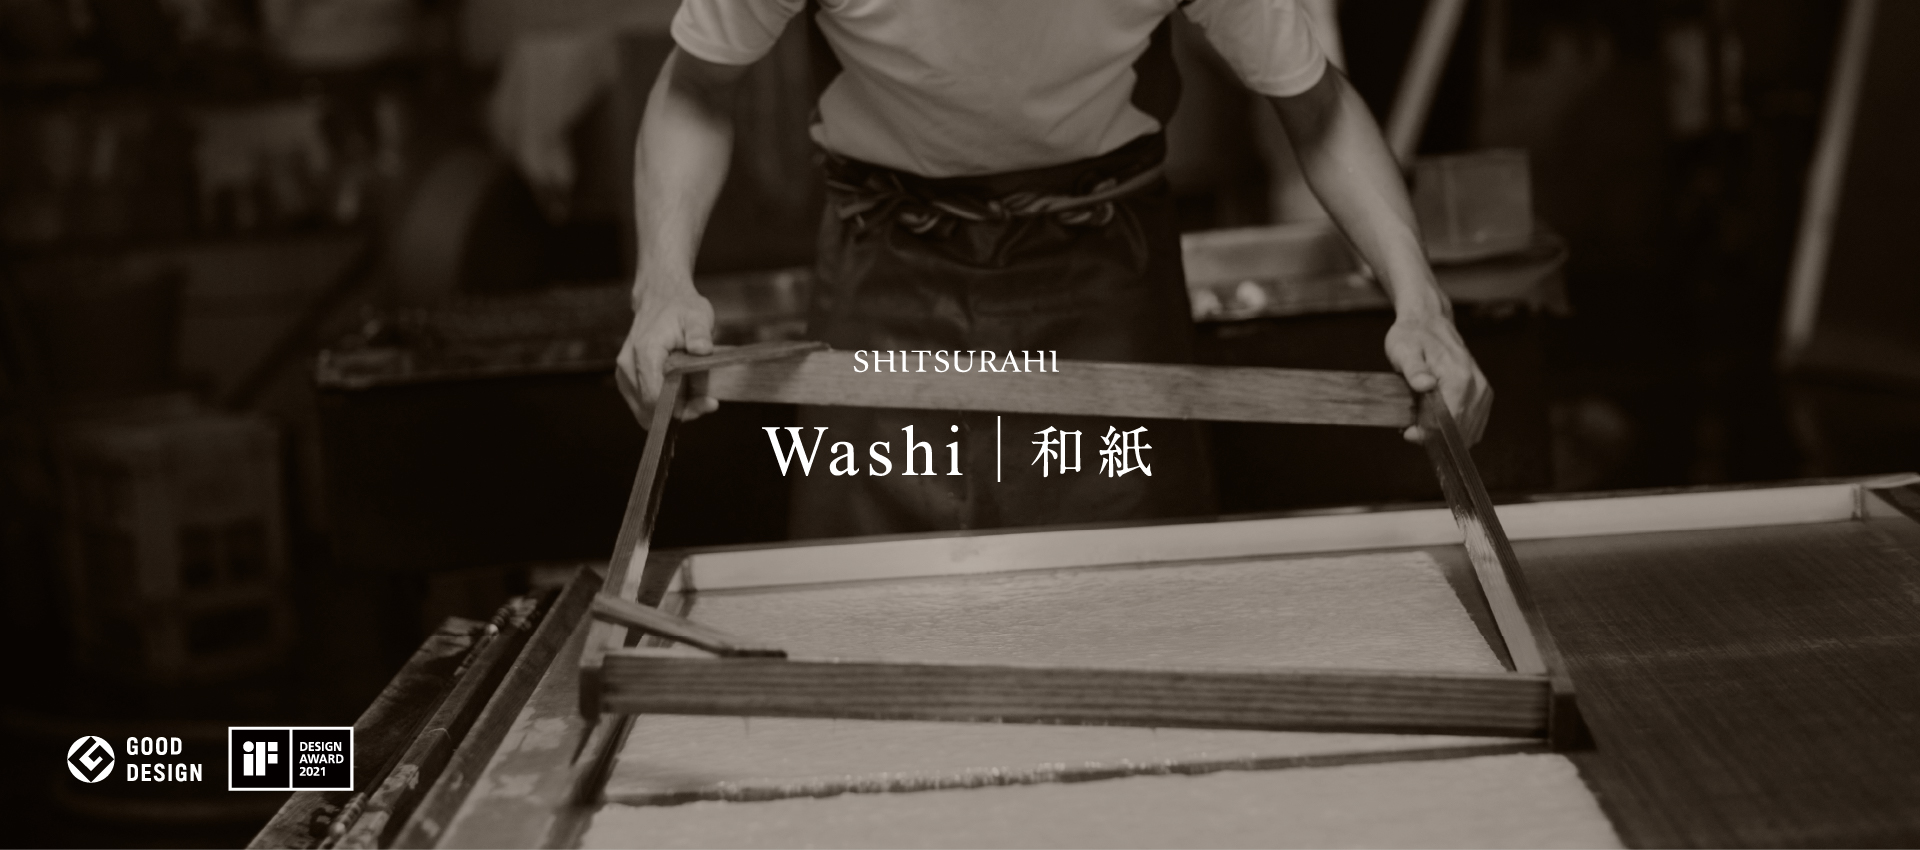 SHITSURAHI Washi 和紙